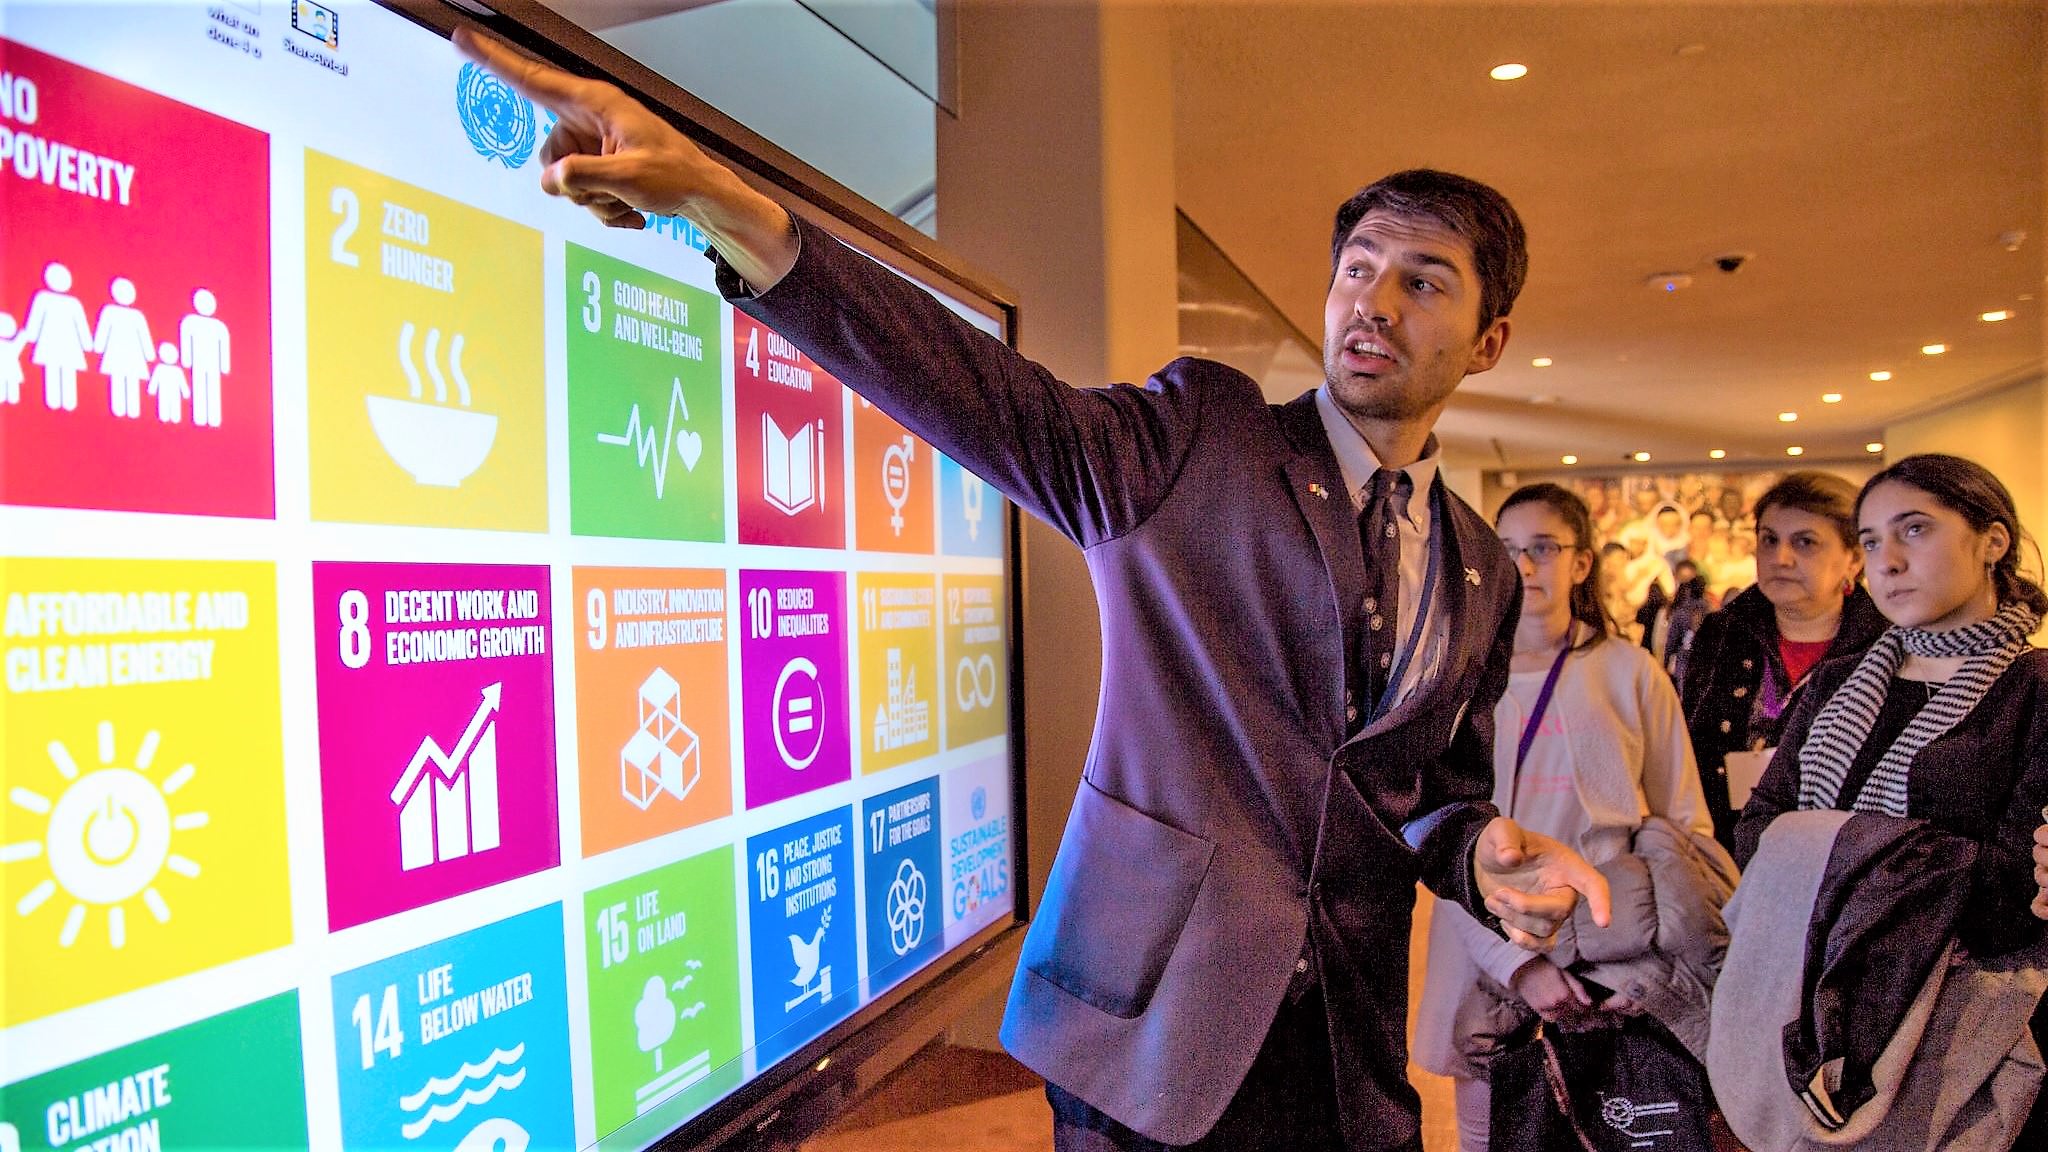 En mand peger på en skærm, der viser FN's 17 verdensmål for bæredygtig udvikling